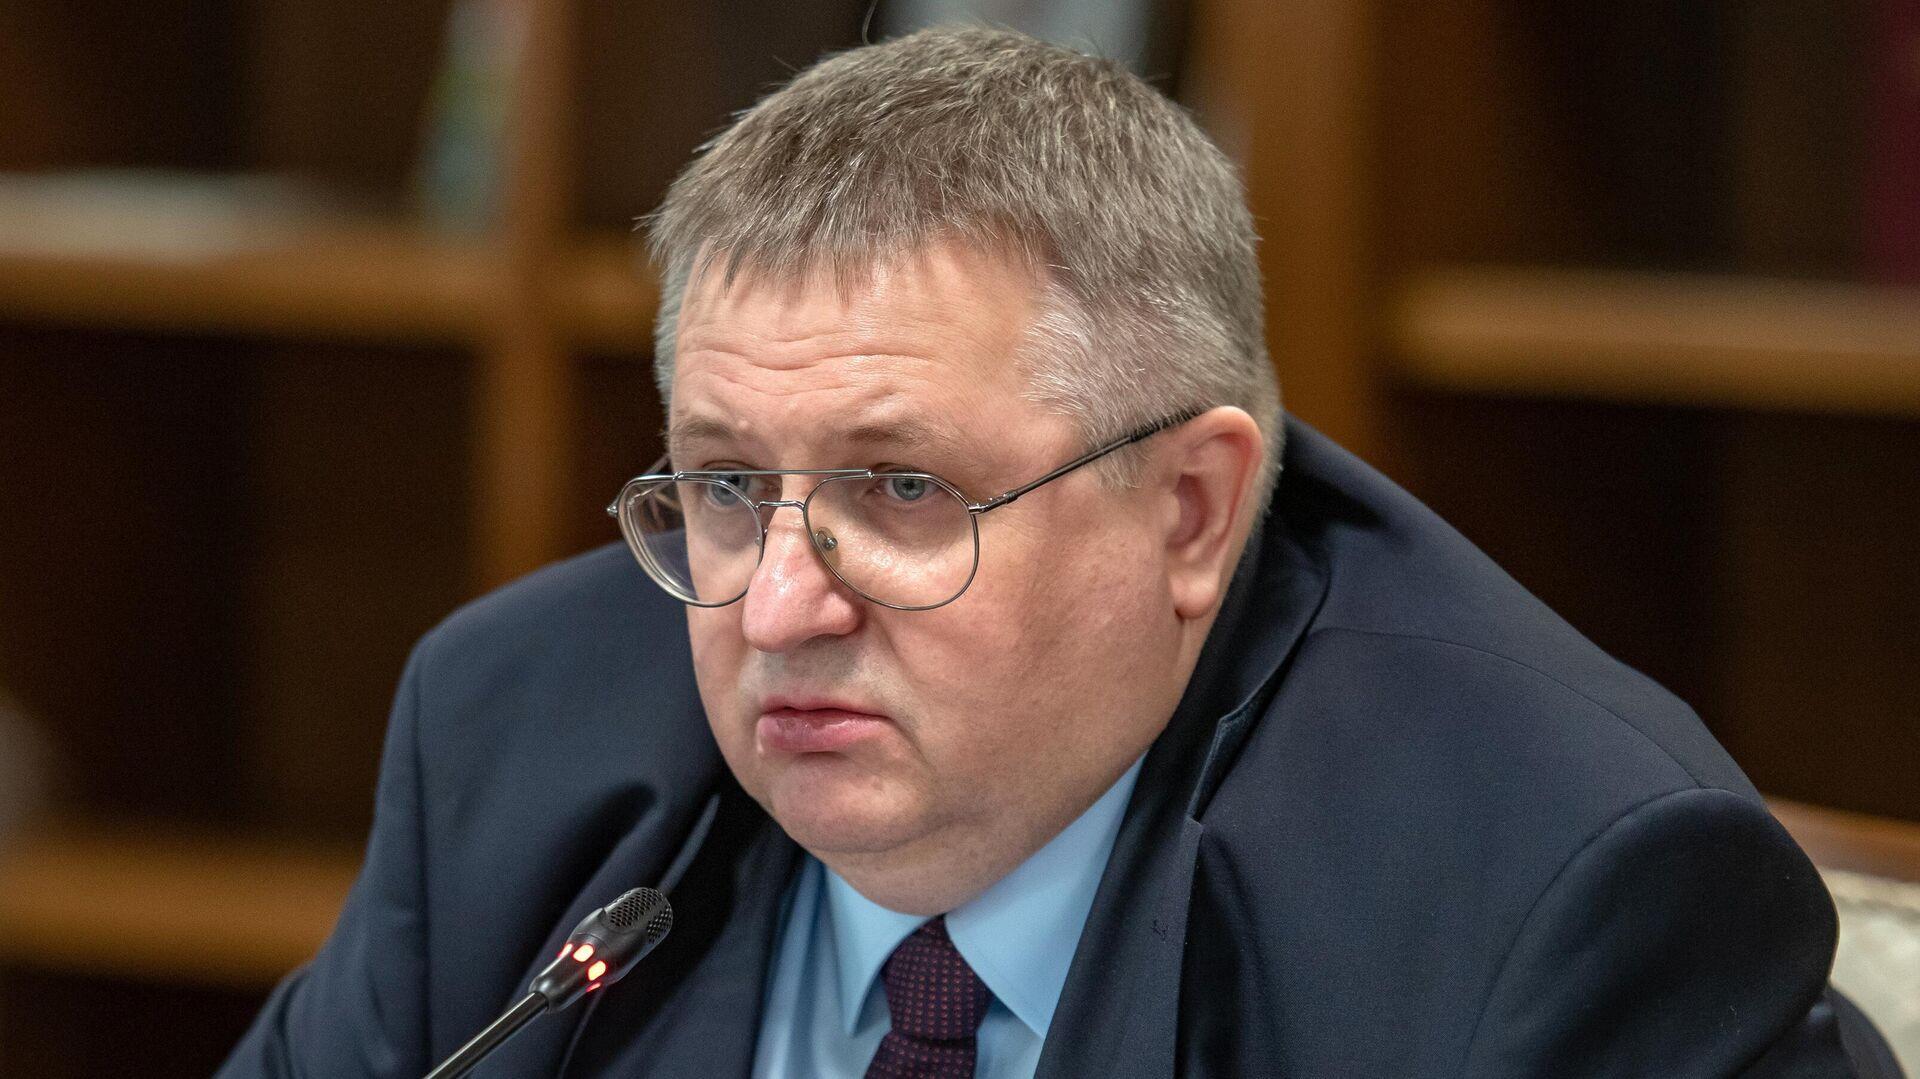 ՌԴ-ն չի լսել որևէ հայտարարություն, որ Երևանը ցանկանում է խզել կապը Մոսկվայի հետ. Օվերչուկ